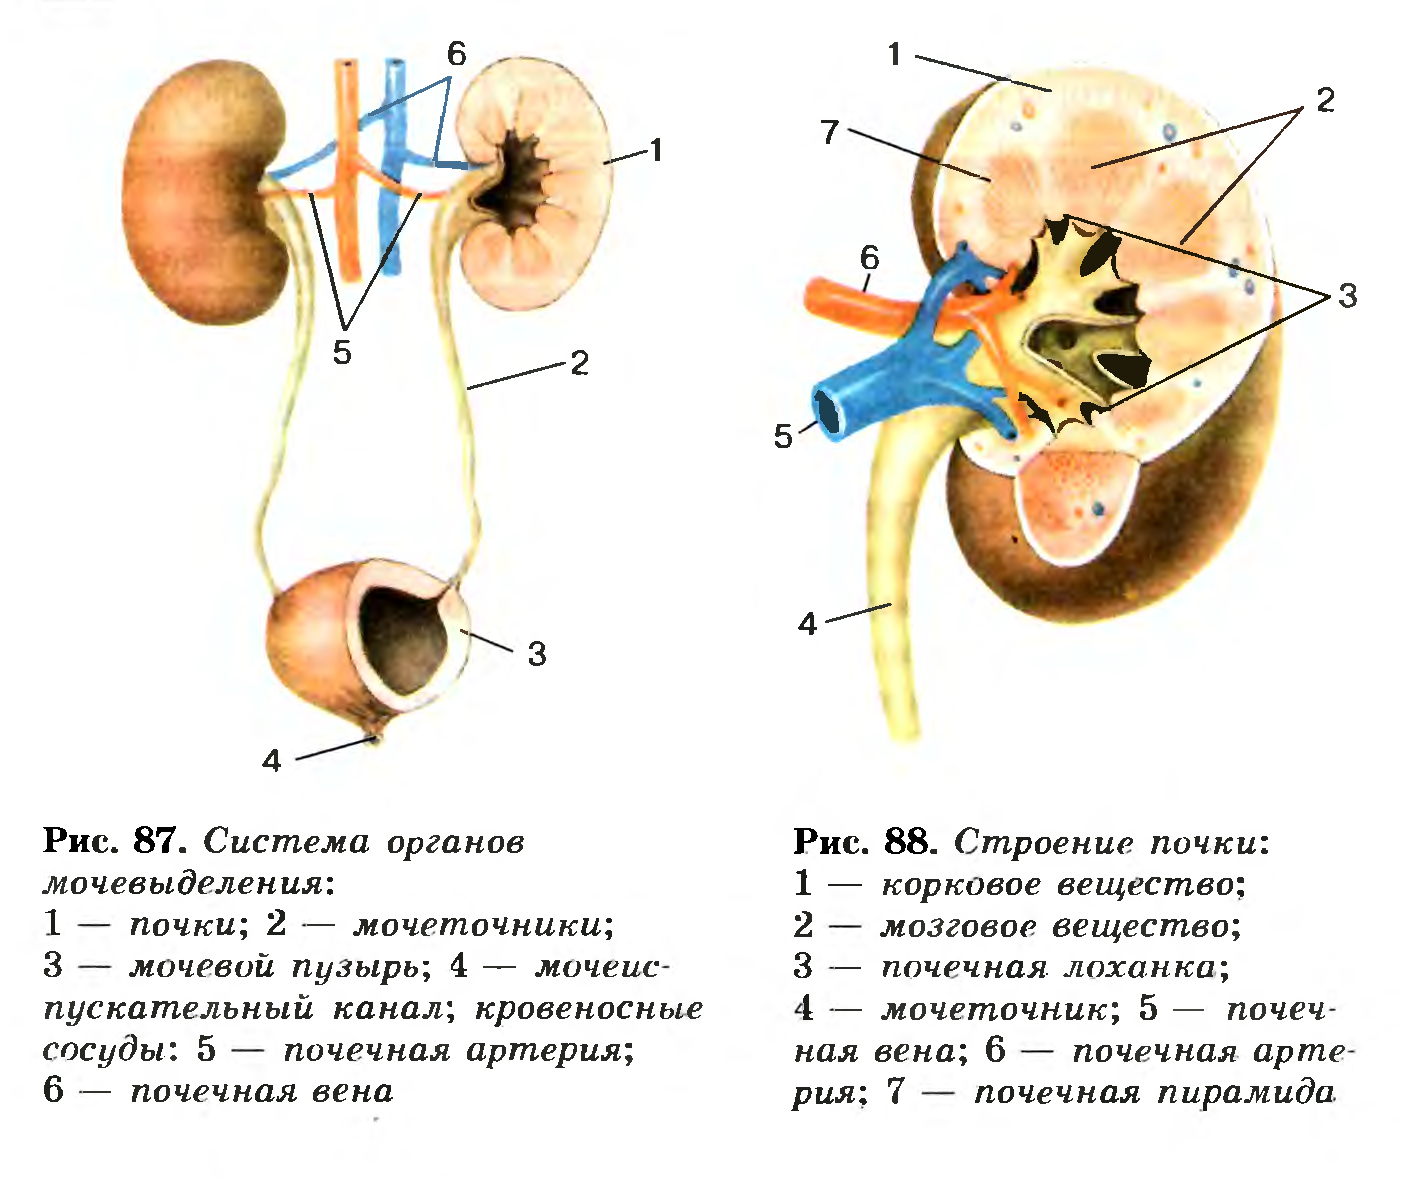 Основной орган мочевыделительной системы человека. Выделительная система строение почки. Анатомия мочевыделительной системы строение почки. Почки и выделительная система биология 8 класс. Схема строения мочевыделительной системы человека.